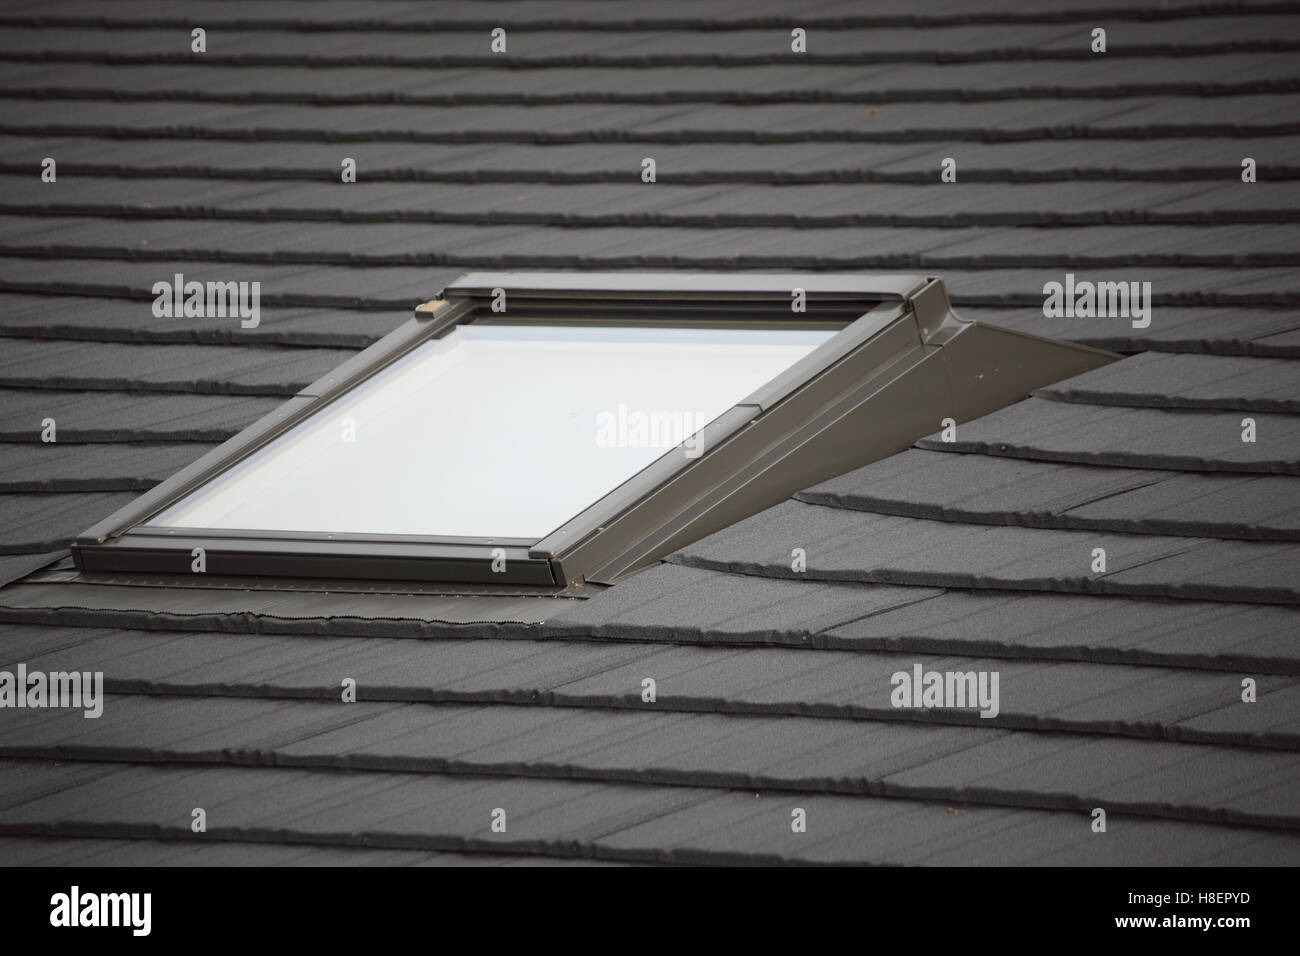 Nahaufnahme eines Dach-Fensters auf einem neuen Holz-Klassenzimmer-Block. Kachel-Effekt Blatt Dachhaut zeigt Stockfoto